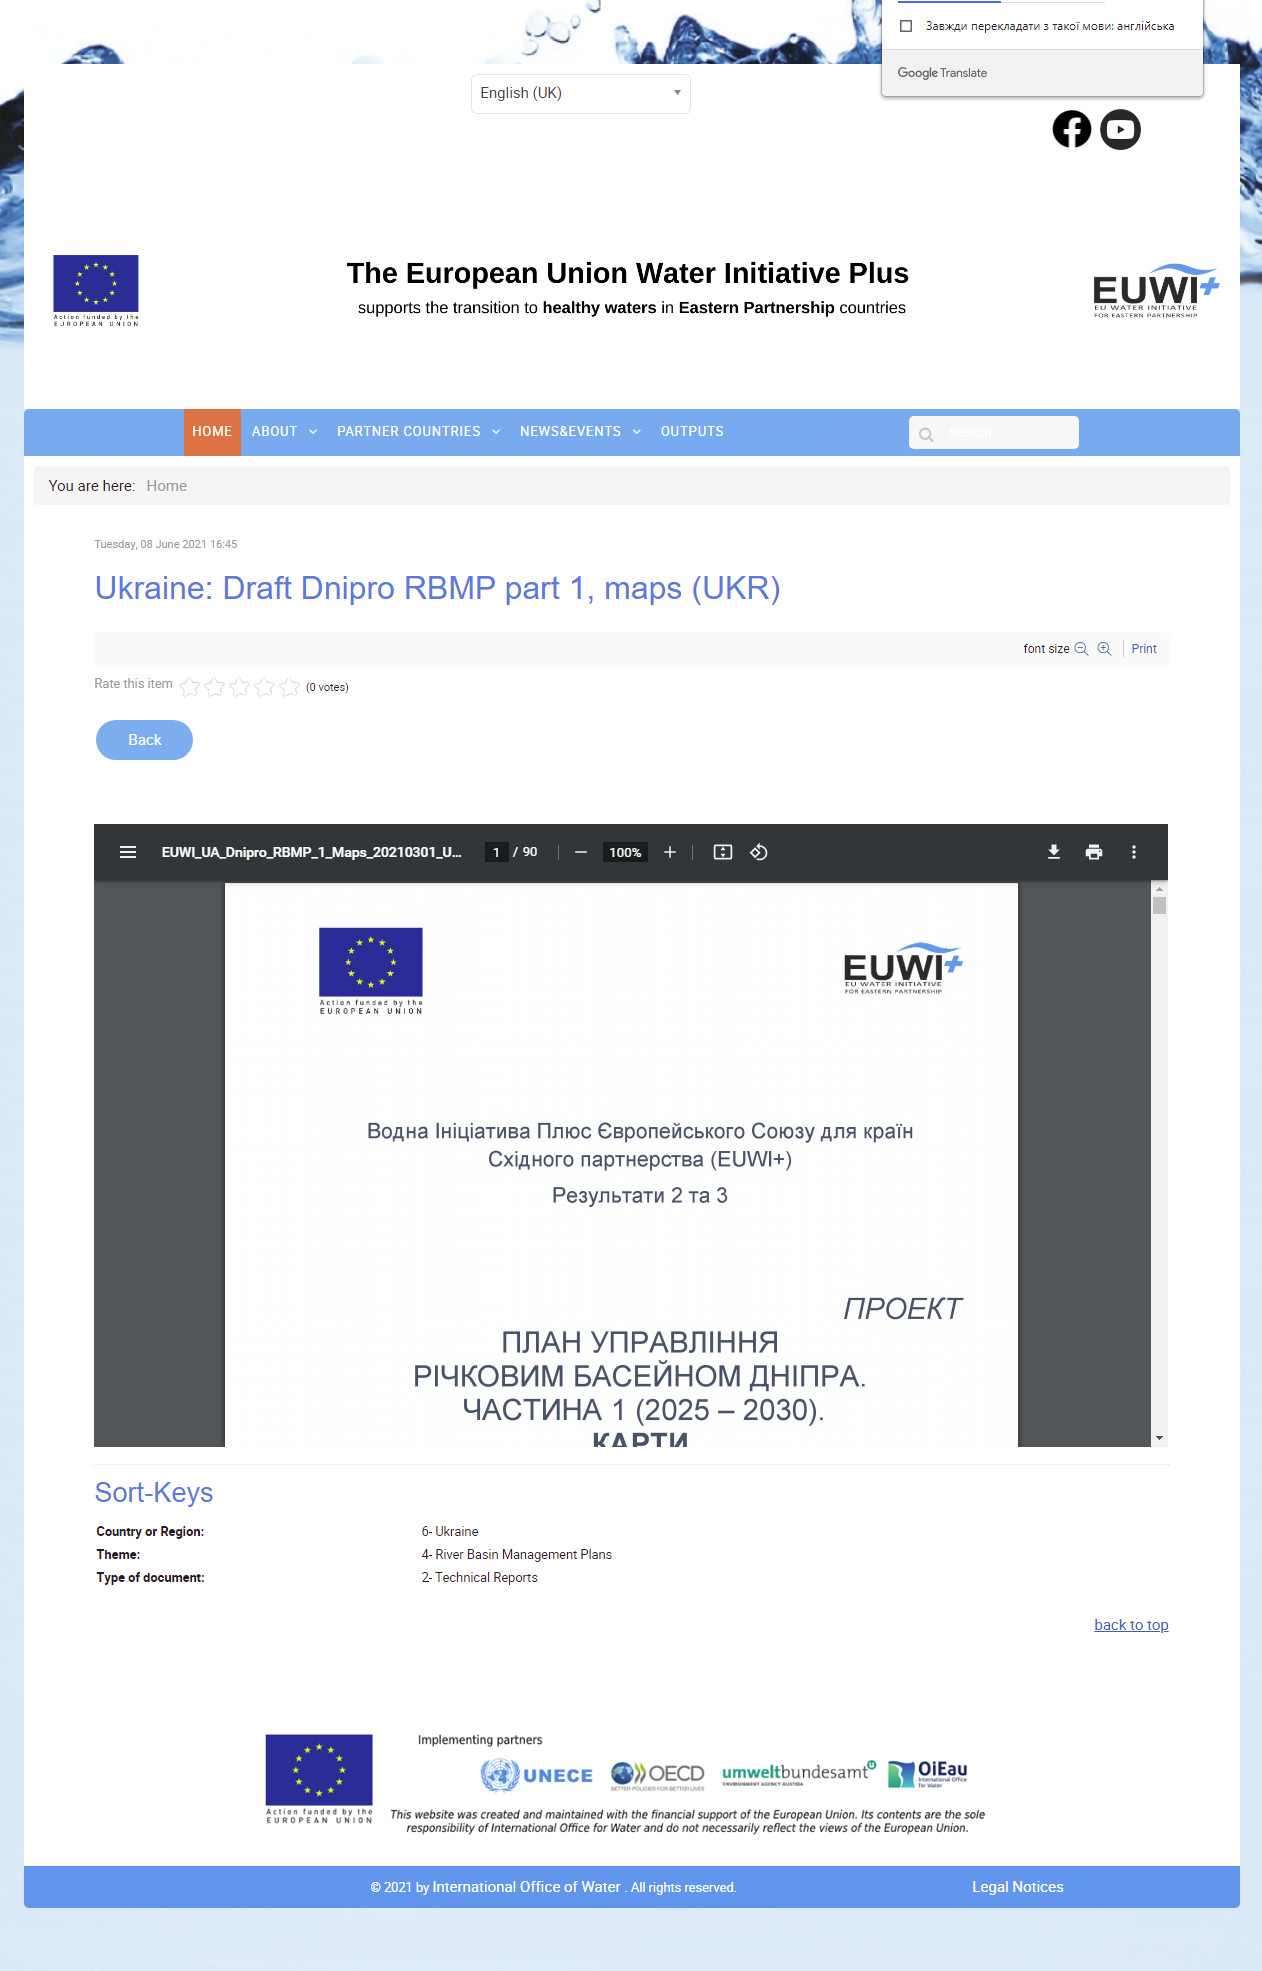 https://www.euwipluseast.eu/en/component/k2/item/1875-ukraine-draft-dnipro-rbmp-part-1-maps-ukr?fromsearch=1&fbclid=IwAR3ZCYstXROH4ZokQHkkWwhu40VocKWquMber_hMvF8rIYssd0ZHWF9eJlQ